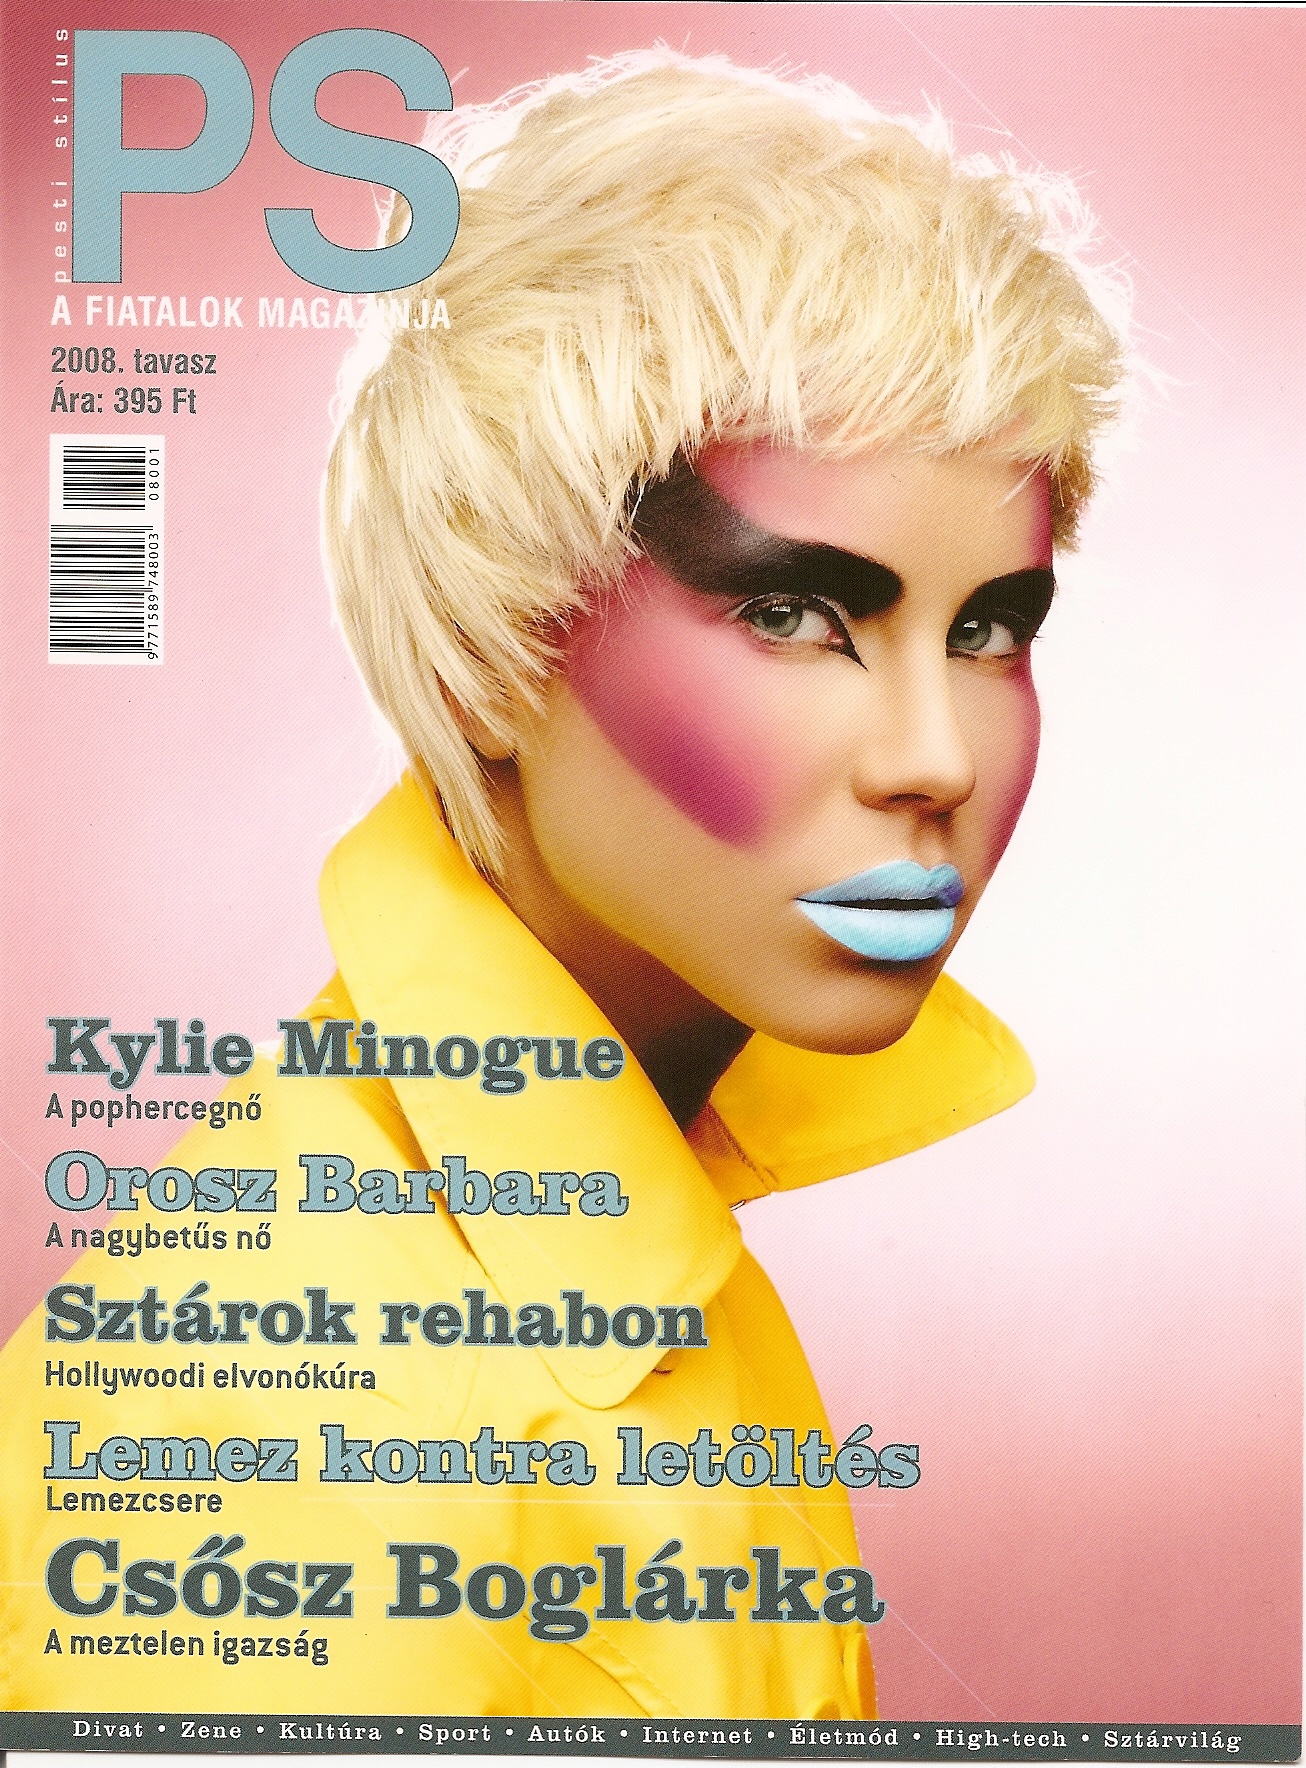 Pesti Stílus magazine cover, 2008.